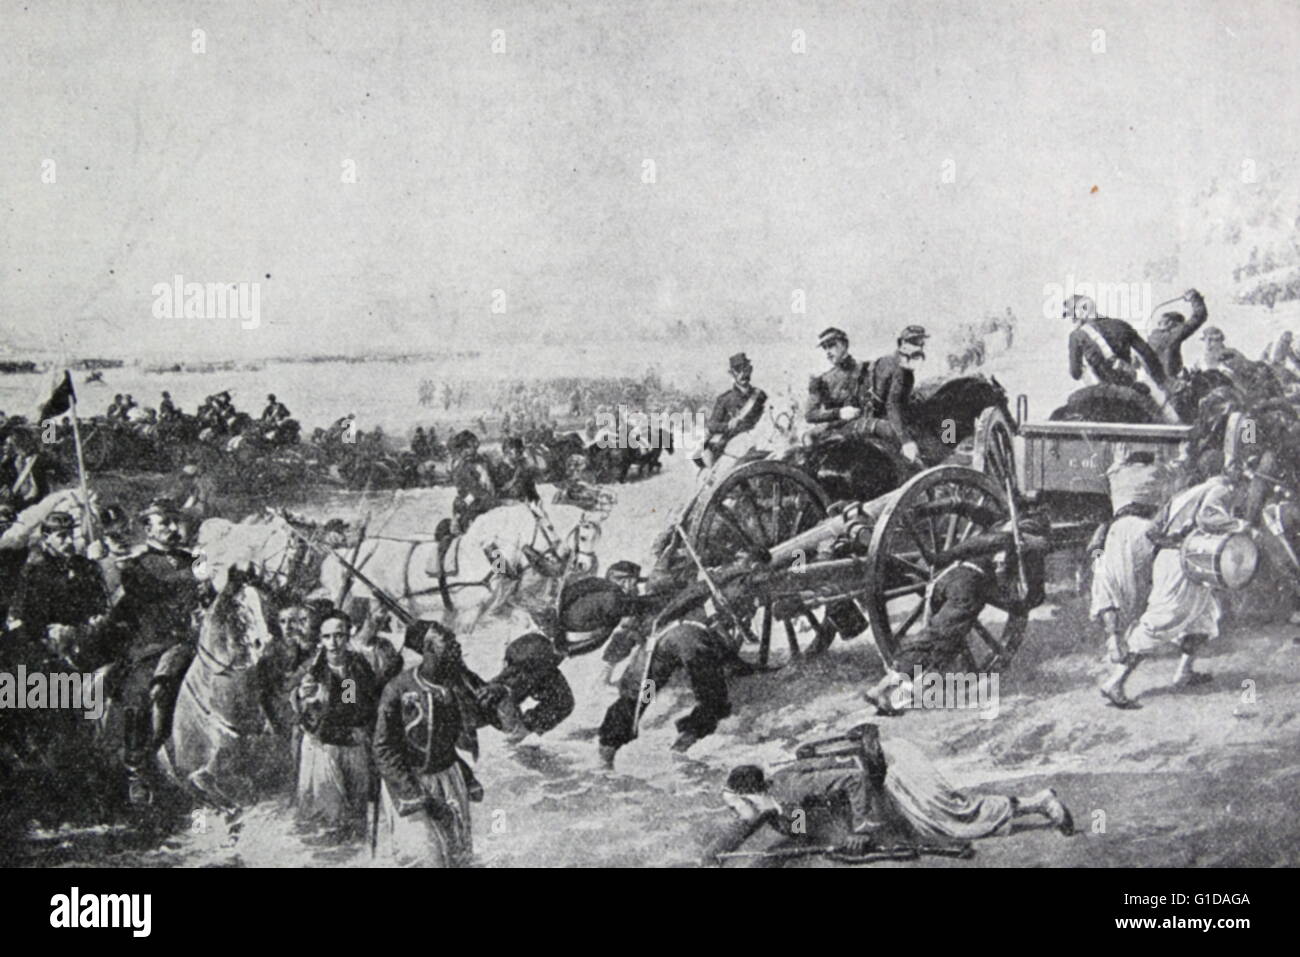 La battaglia del Alma (20 settembre 1854), che di solito è considerata la prima battaglia della Guerra di Crimea (1853-1856), ha avuto luogo appena a sud del fiume Alma in Crimea. Foto Stock